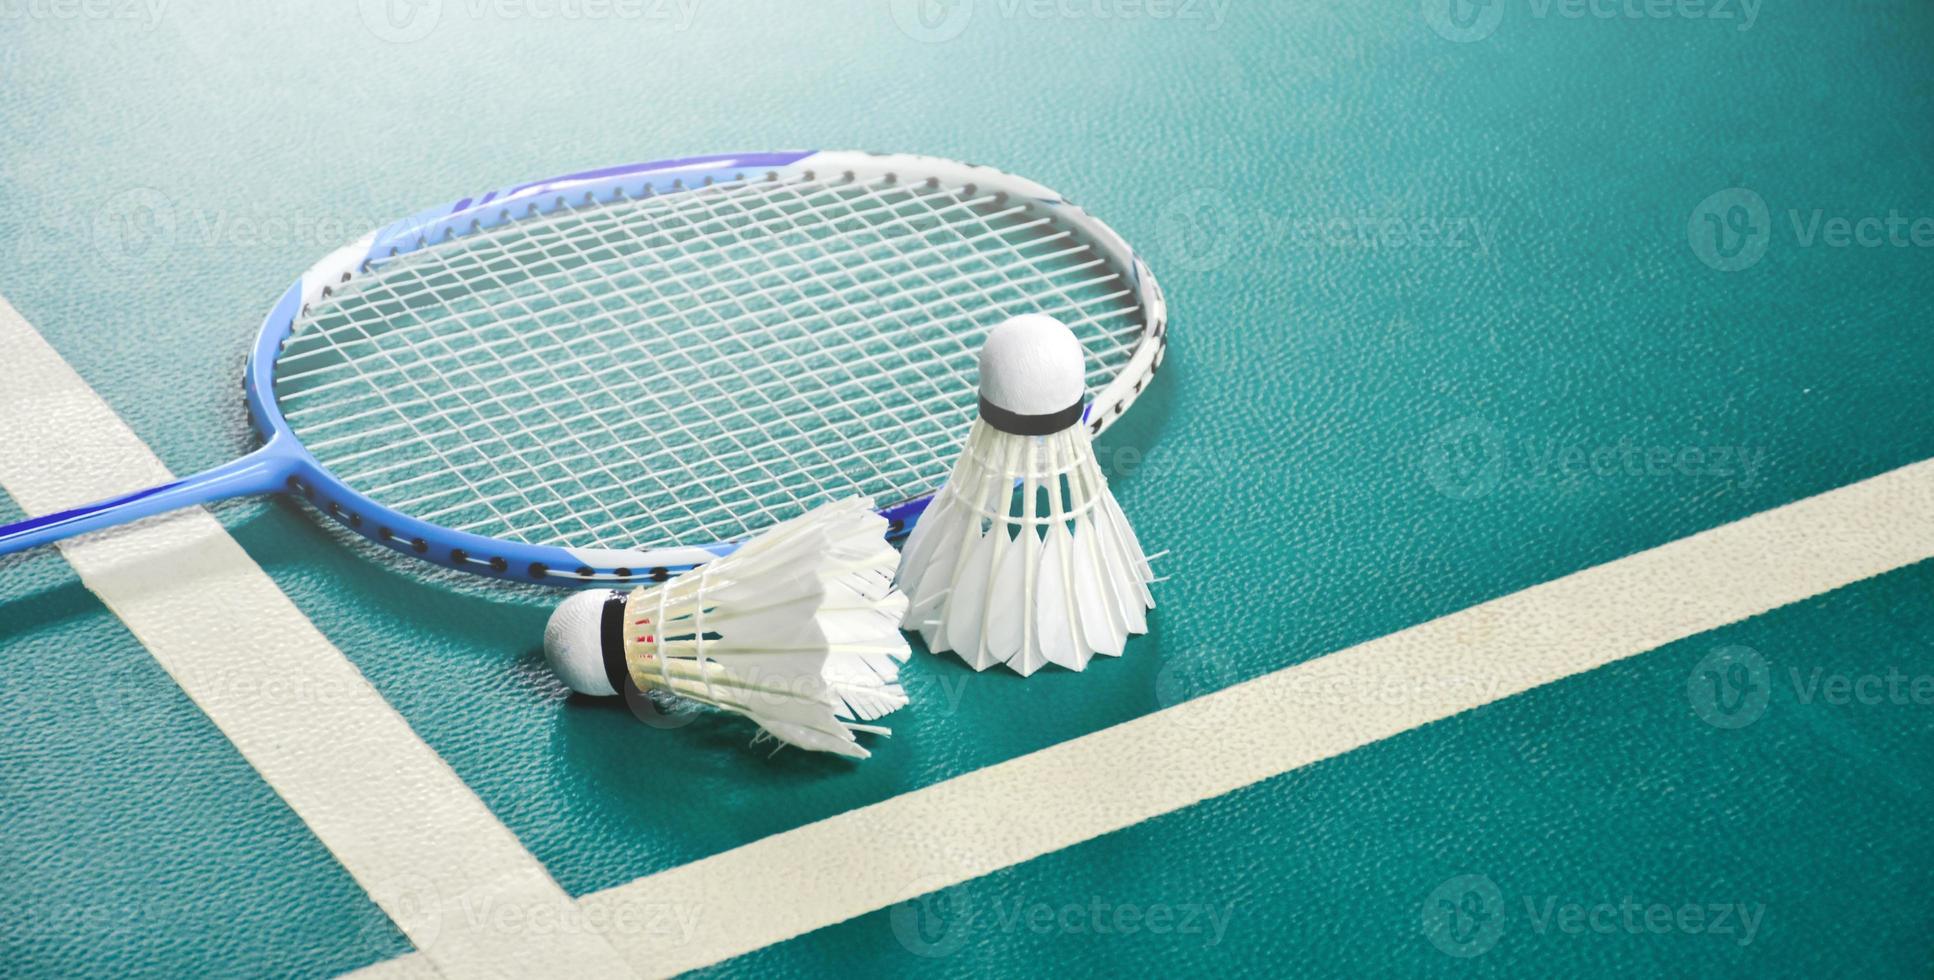 badmintonshuttles en racket op groene achtergrond, zachte en selectieve focus. foto